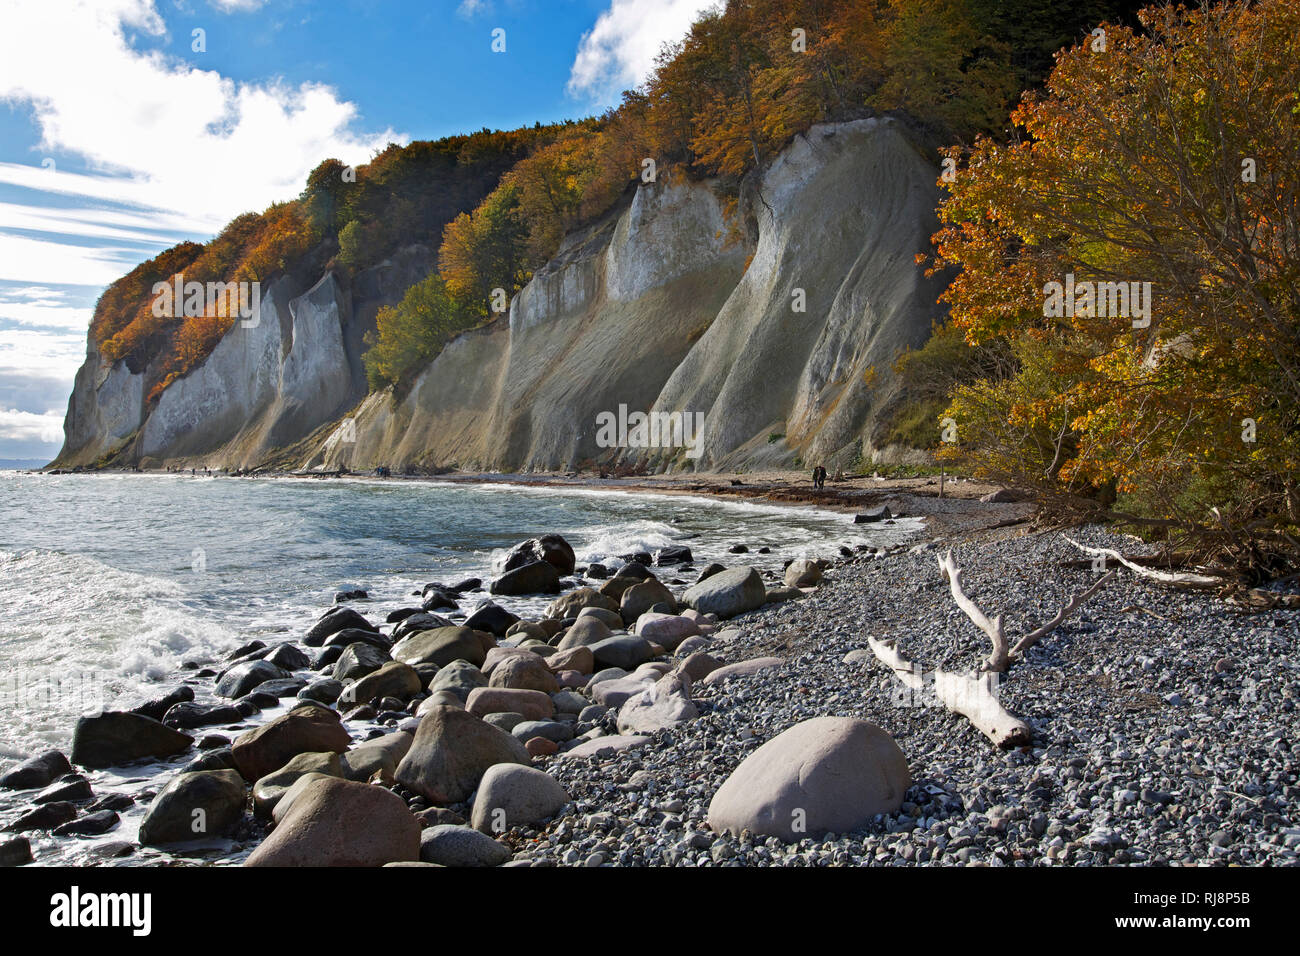 Herbstlich bunter Wald auf den Felsen der Wissower Klinken an der Kreidek√ºste der Halbinsel Jasmund, Stock Photo